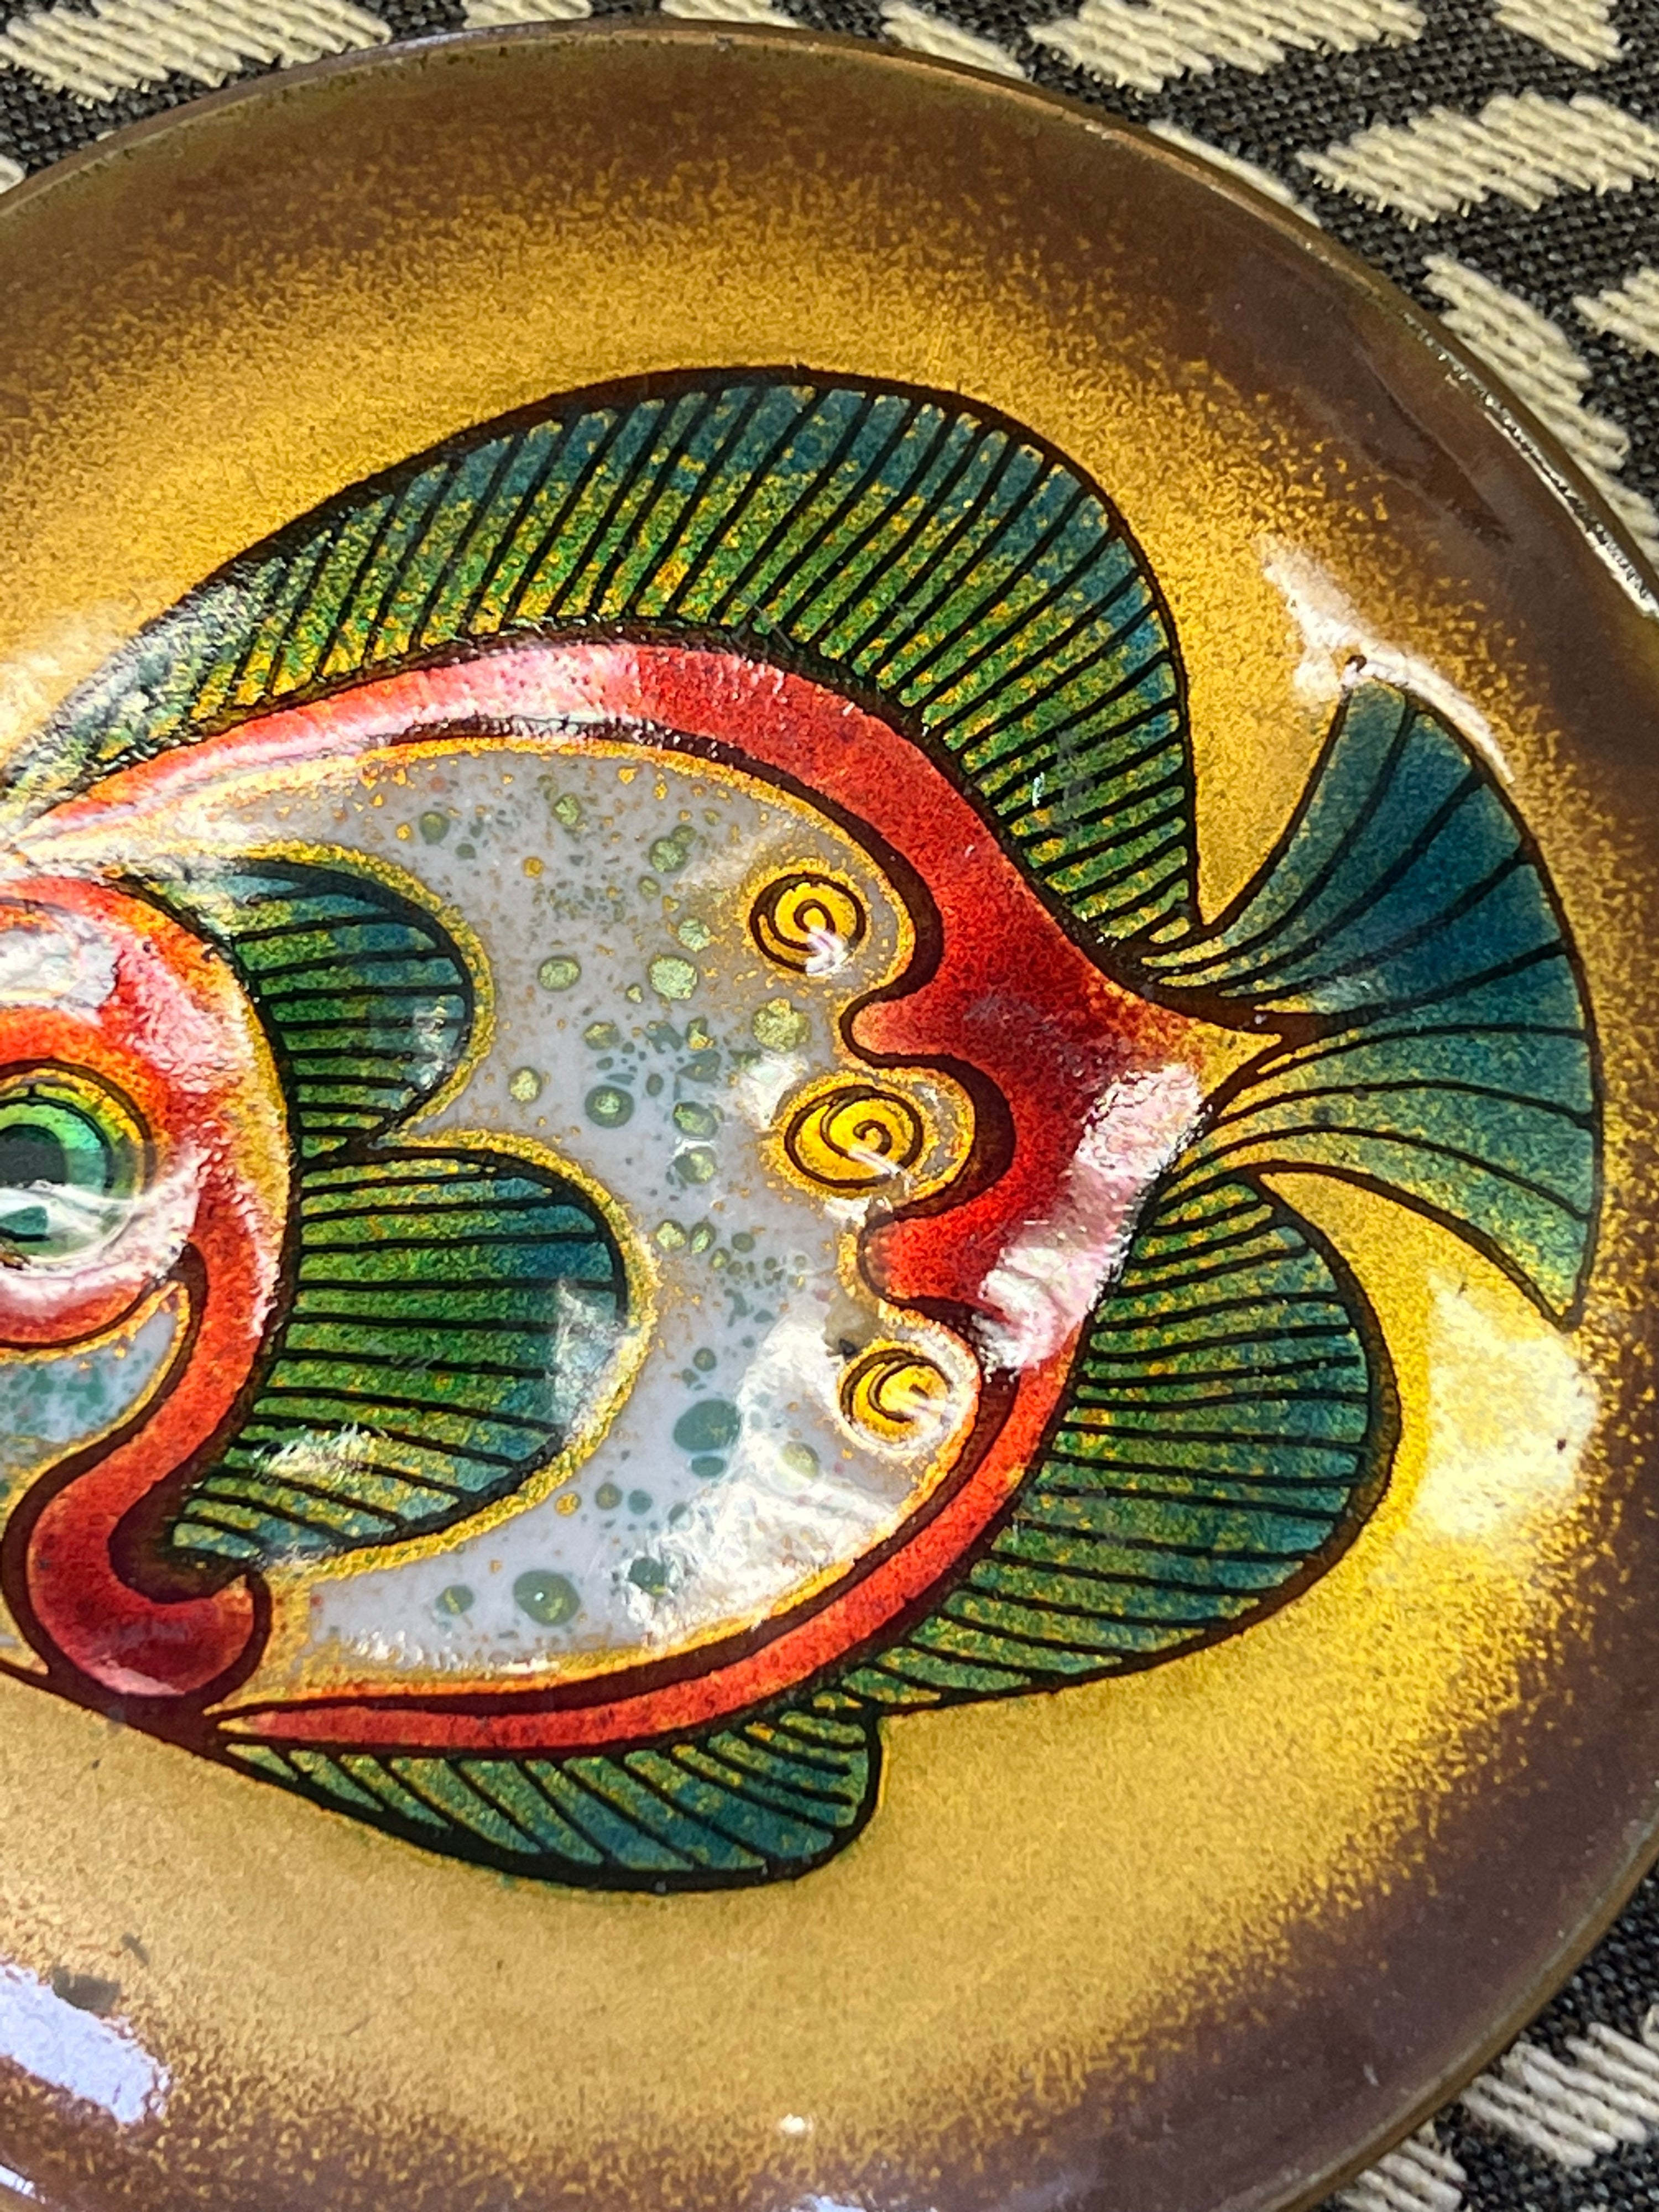 “Phyllis Wallen” Copper Enamel Fish